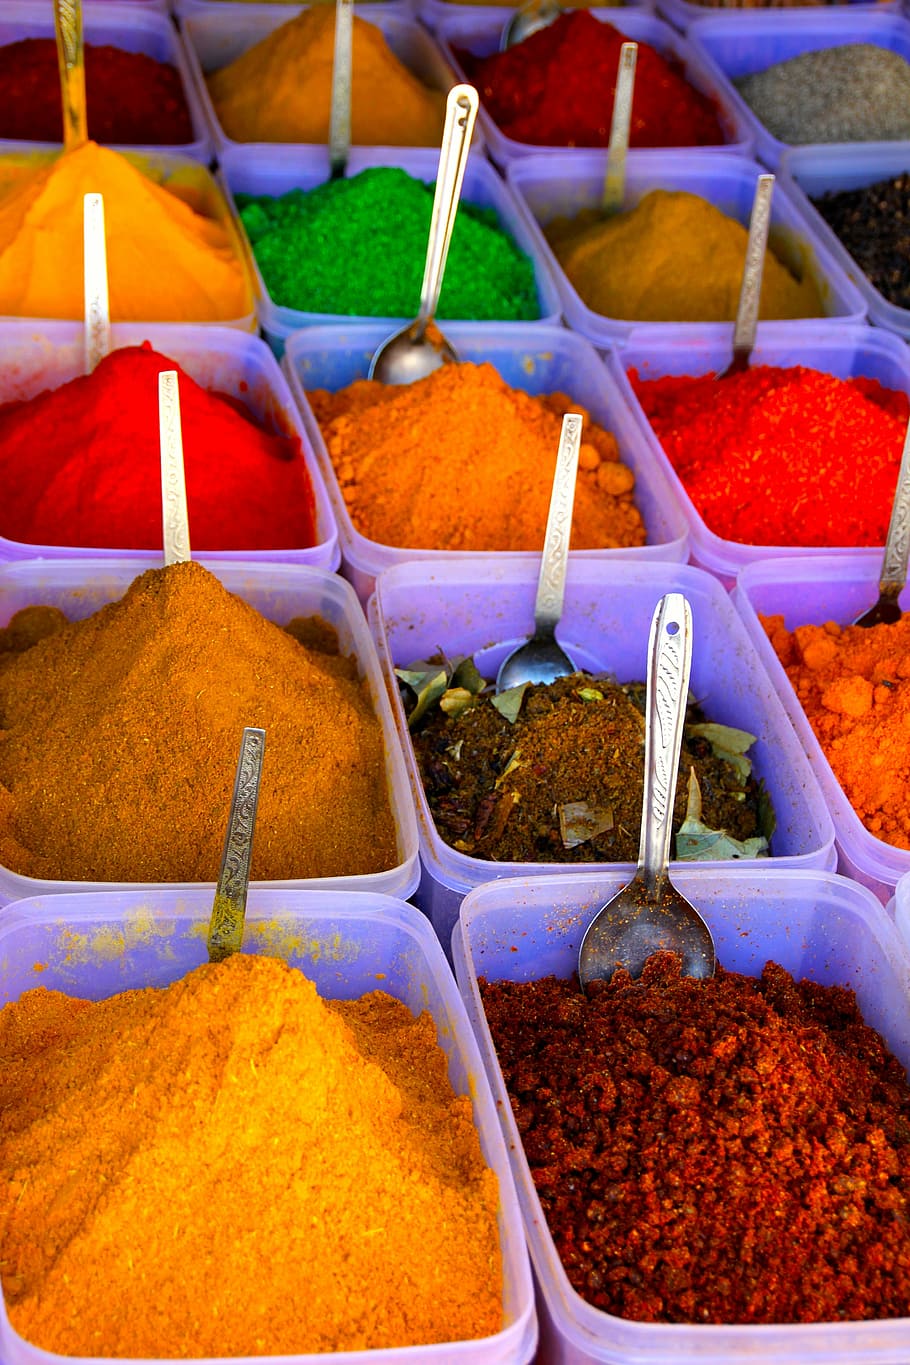 pile of condiments, color, spices, saffron, powder, bags, sharp